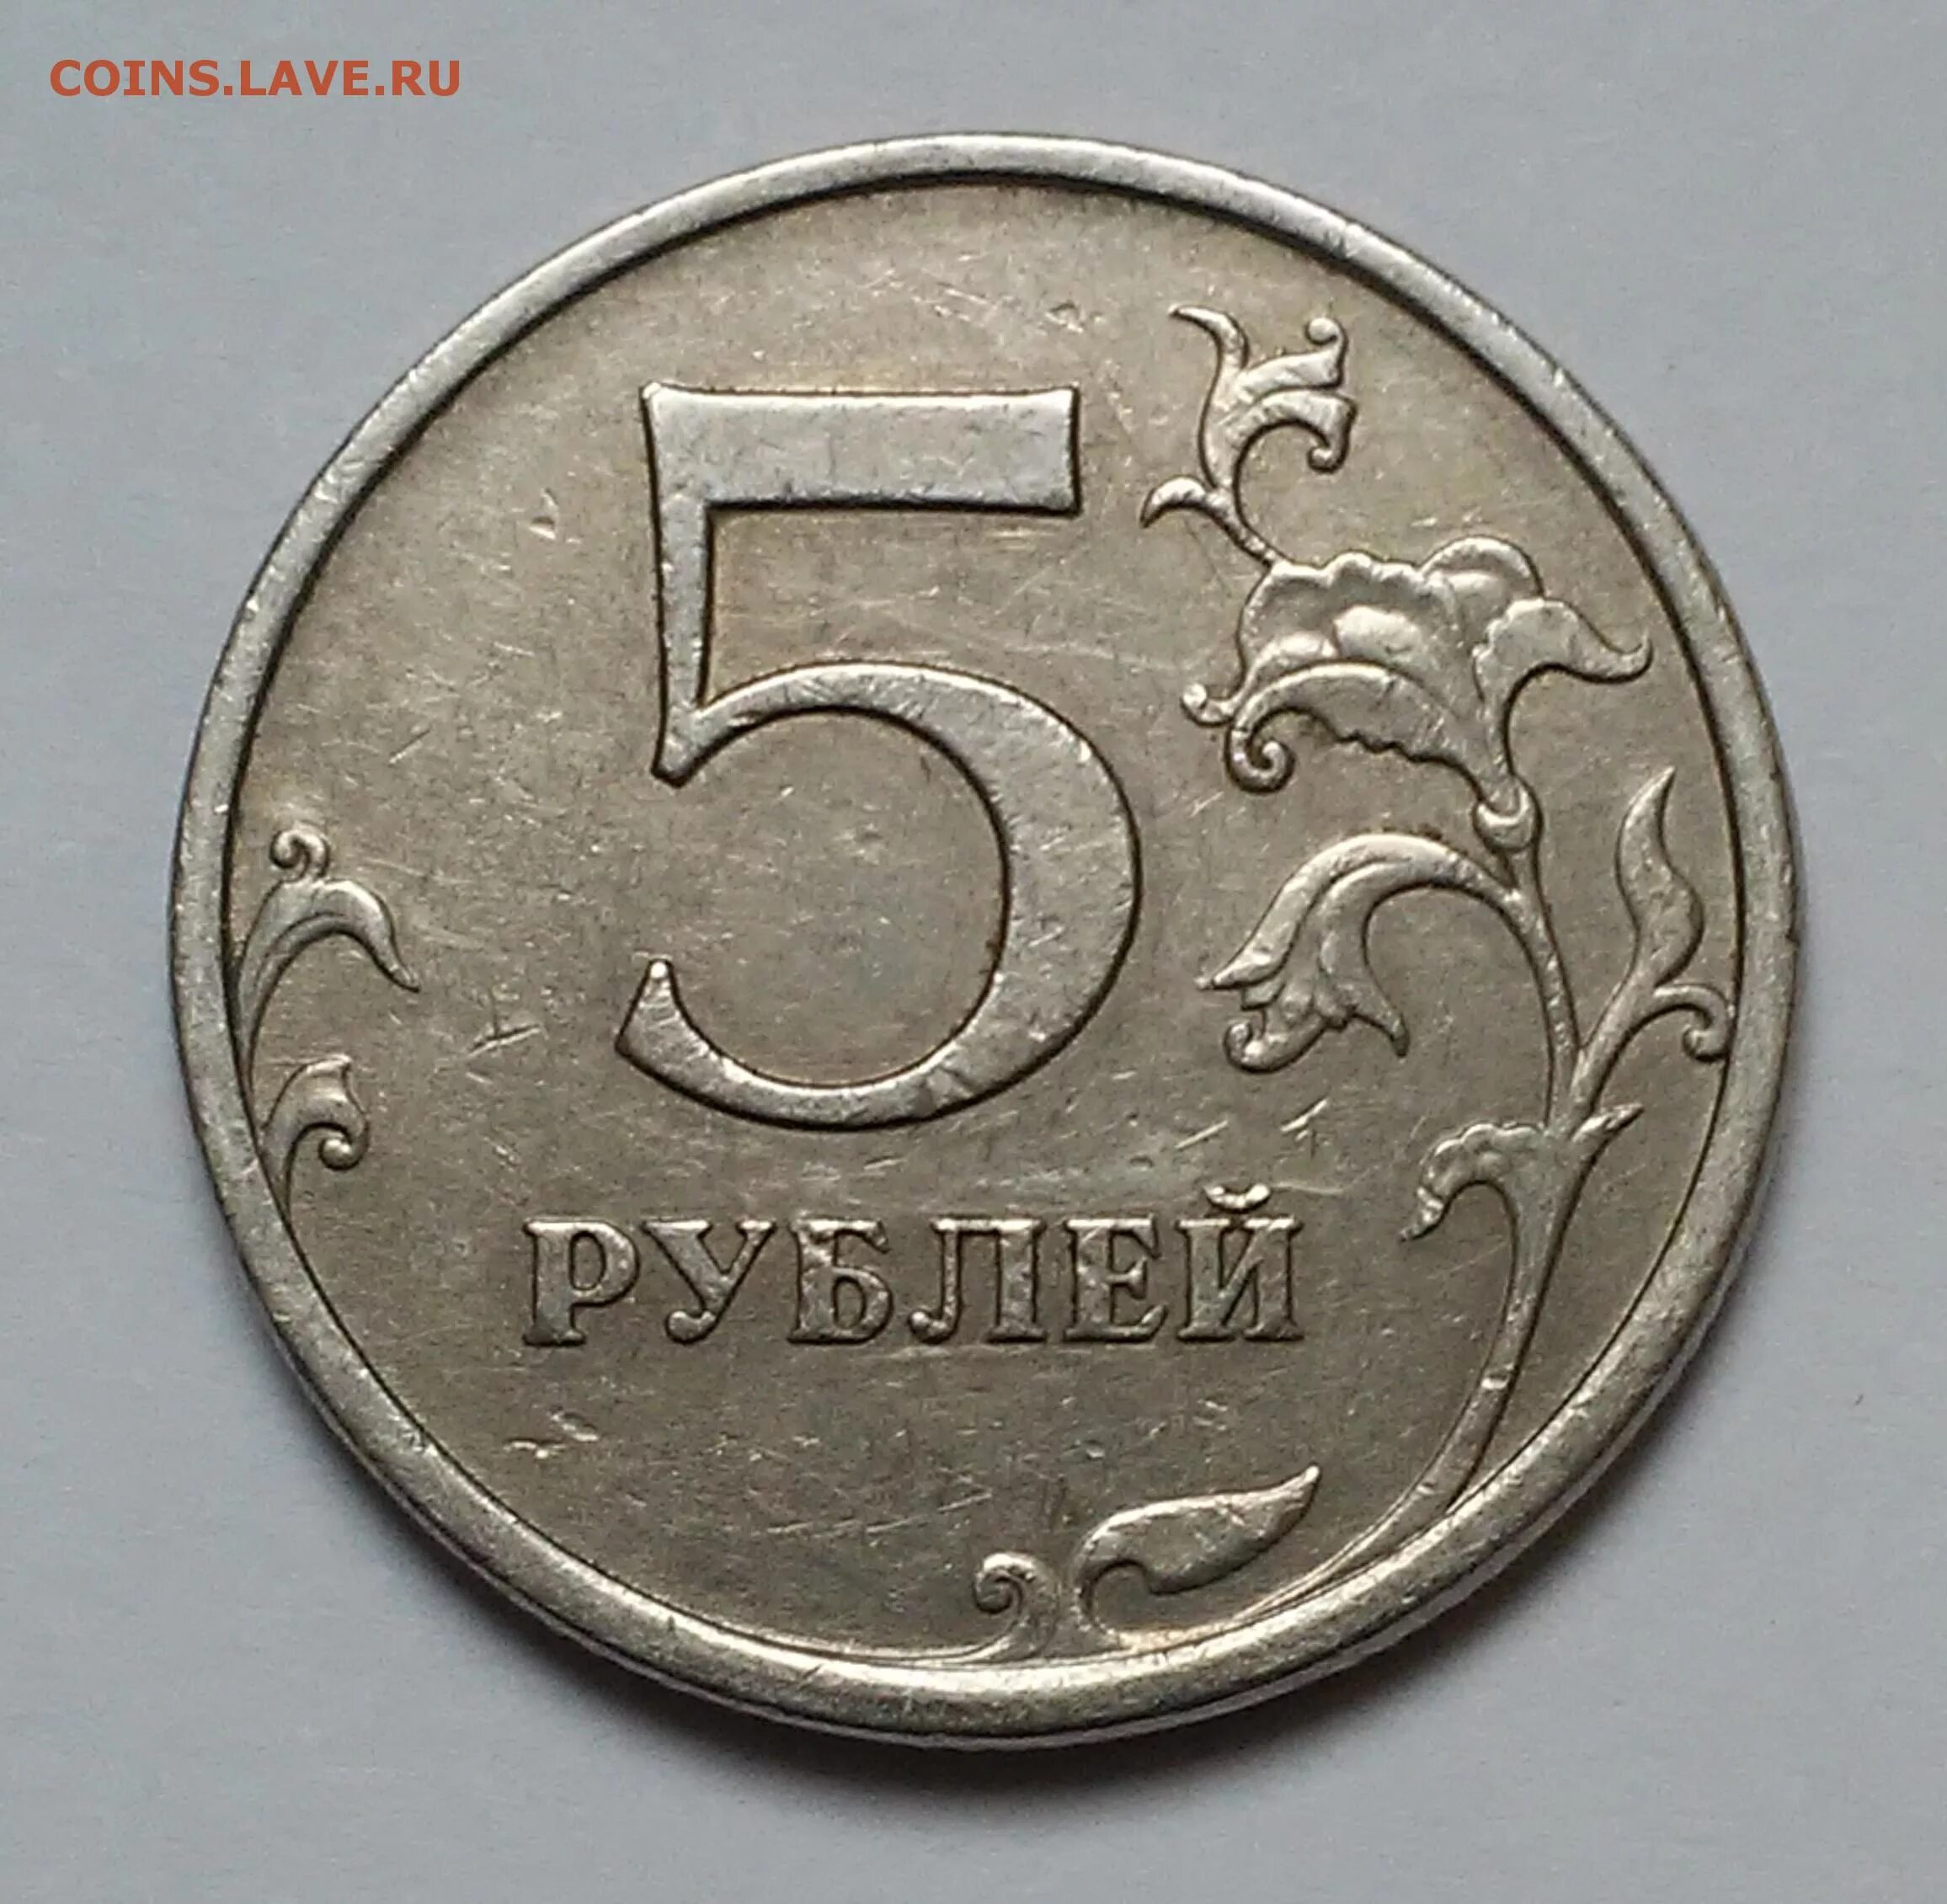 Монета 5 рублей 2003 года. Есть 5 рублей. Пять и десять рублей 1997 года.